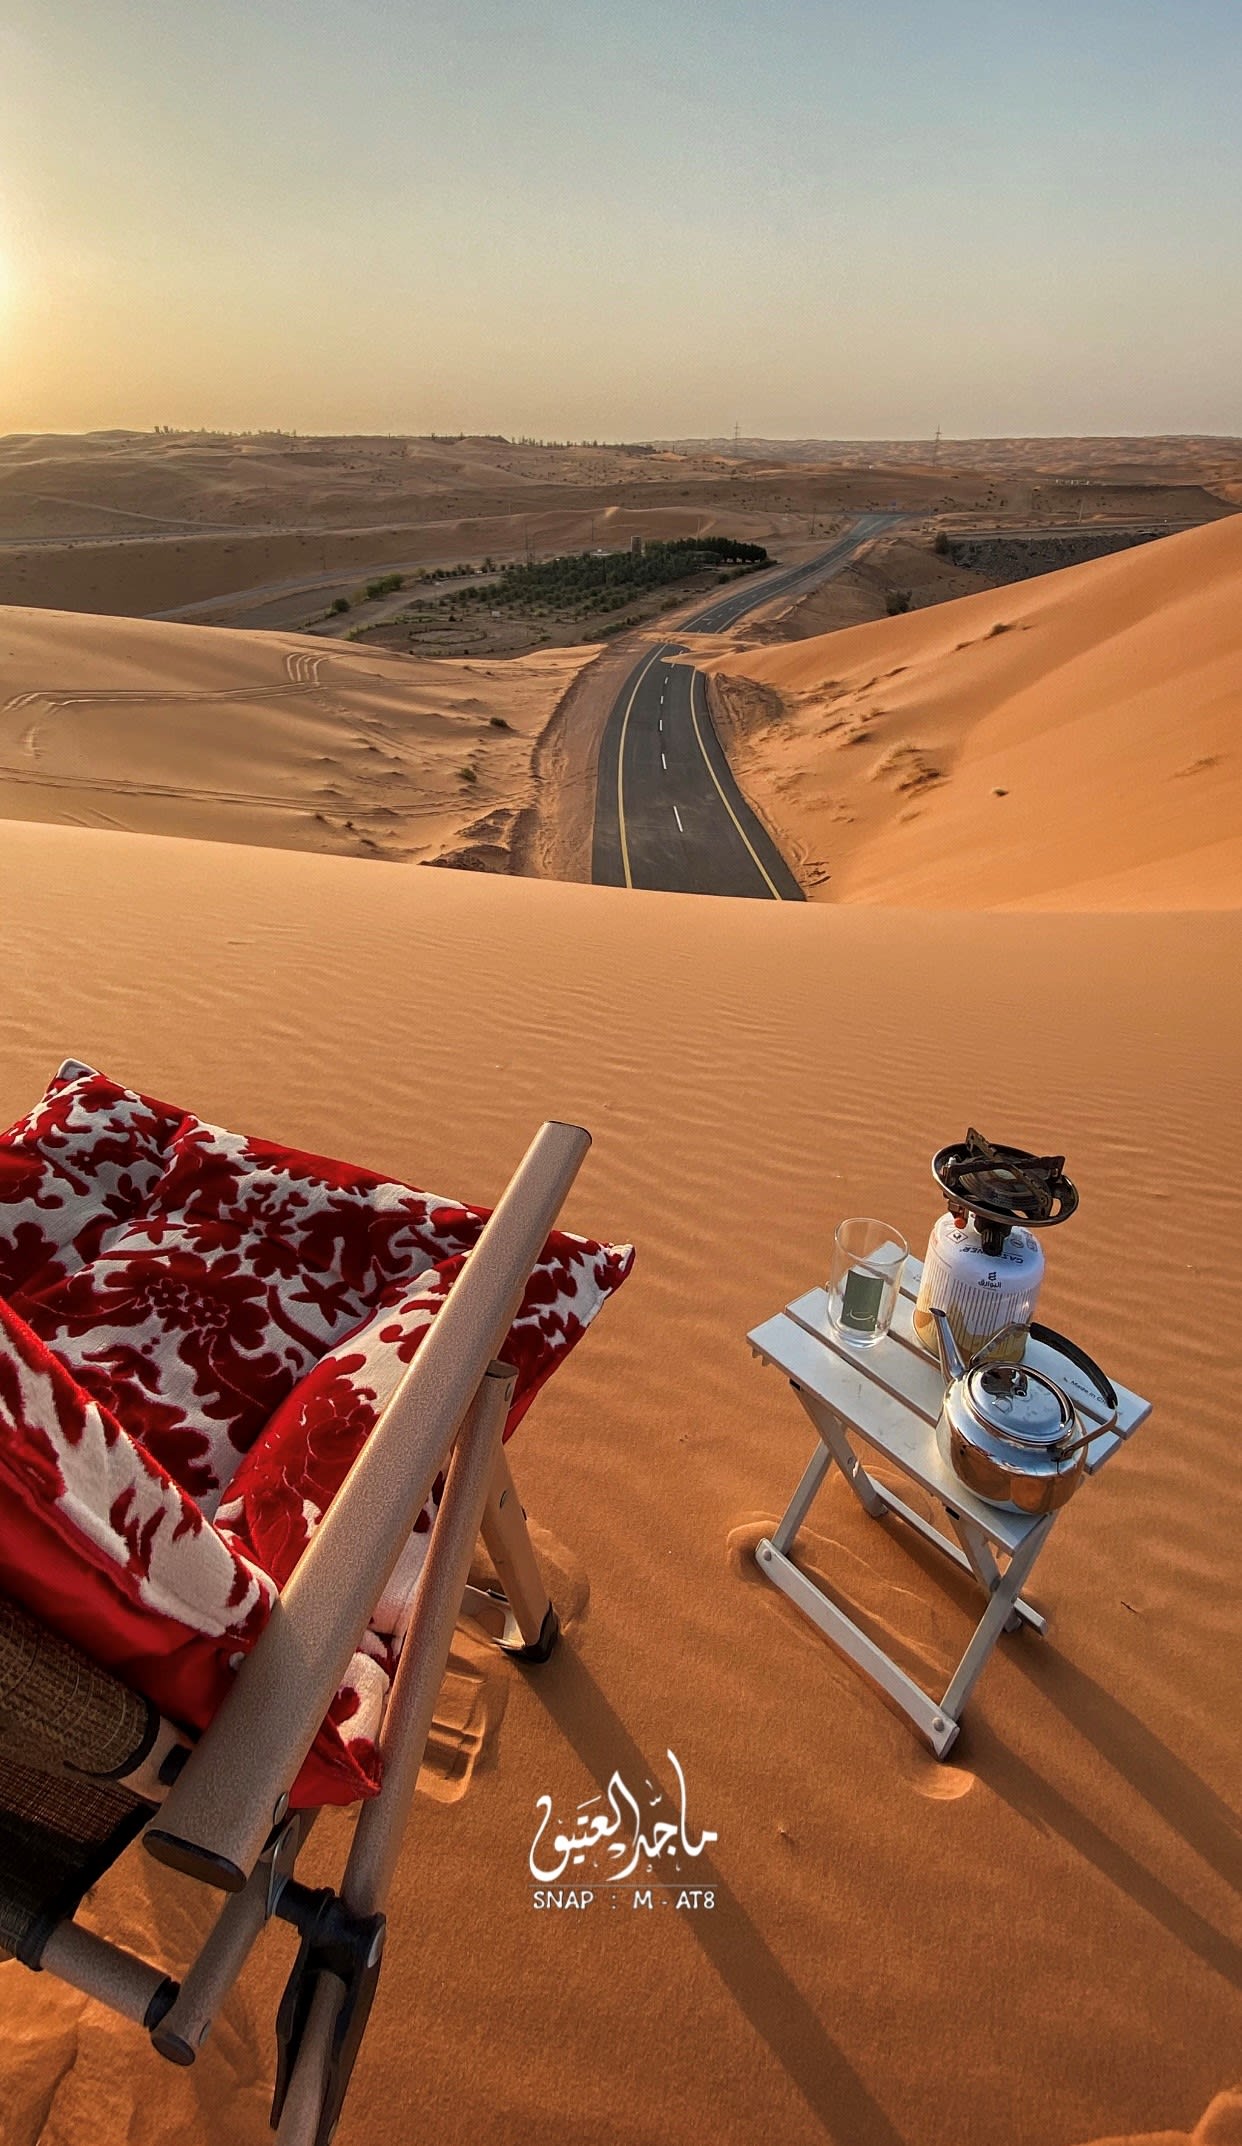 En Arabia Saudita, un fotógrafo documenta un encantador paseo al final de un camino cubierto de arena